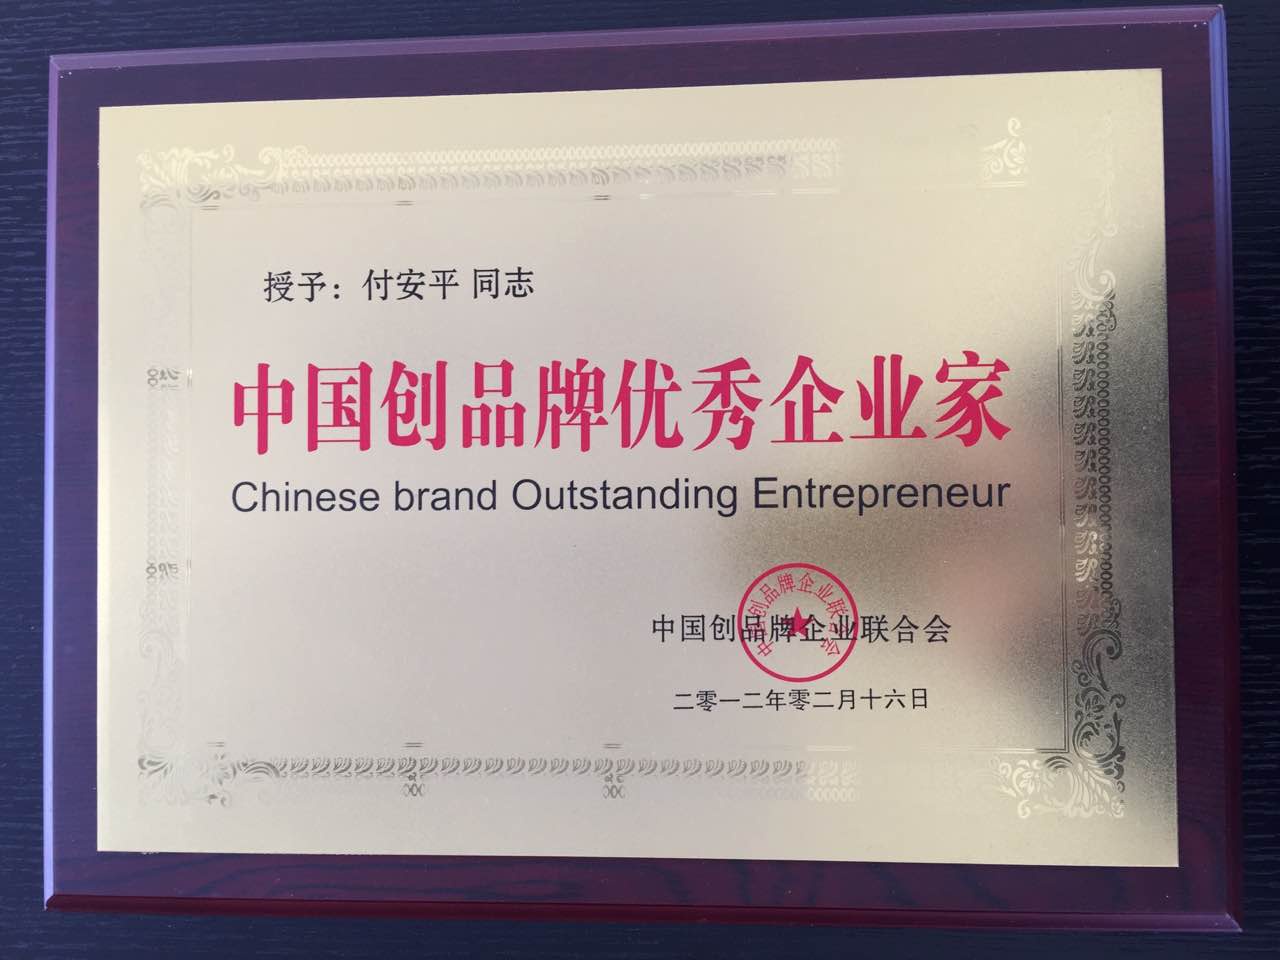 中国创品牌优秀企业家